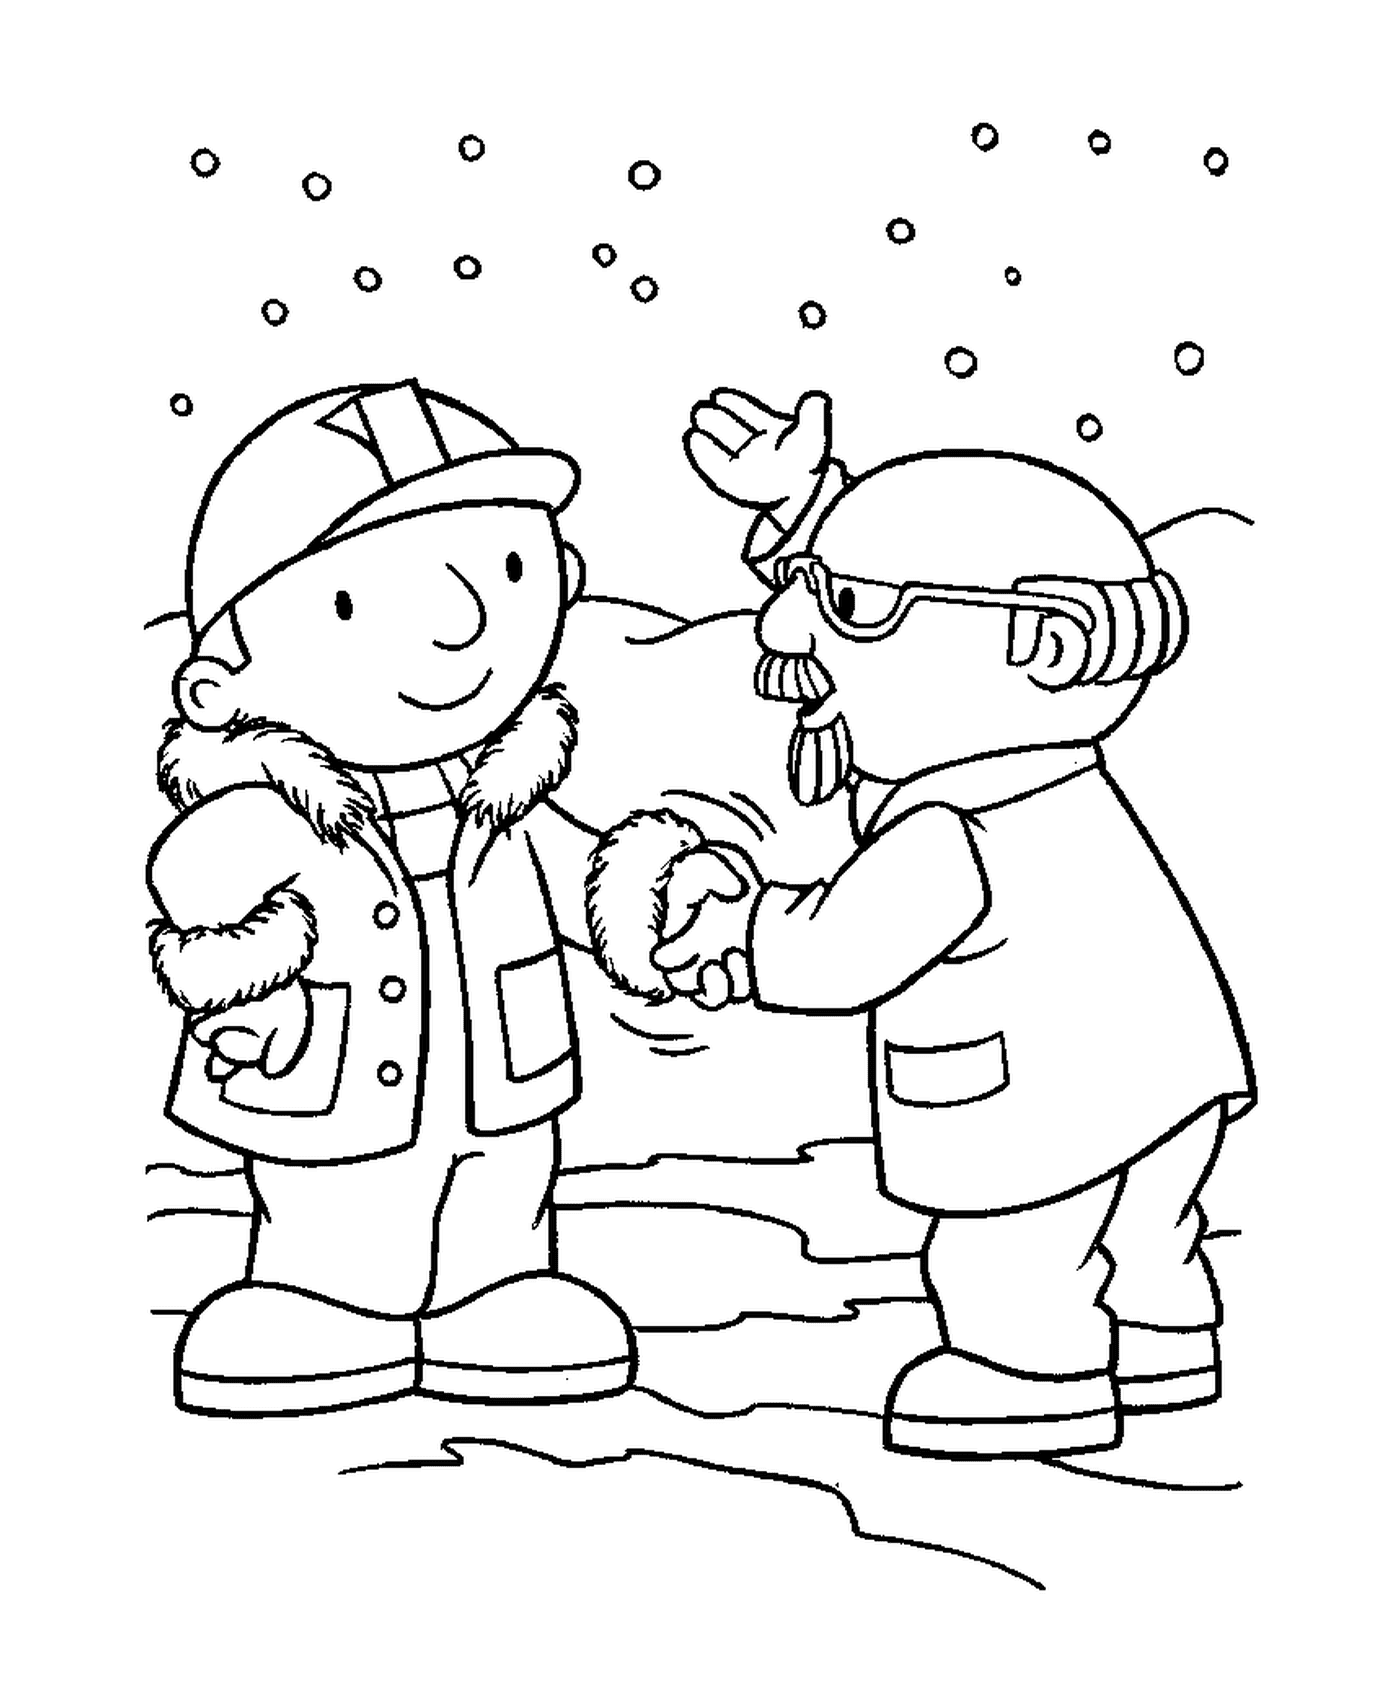  شخصان يتصافحان في الثلج 